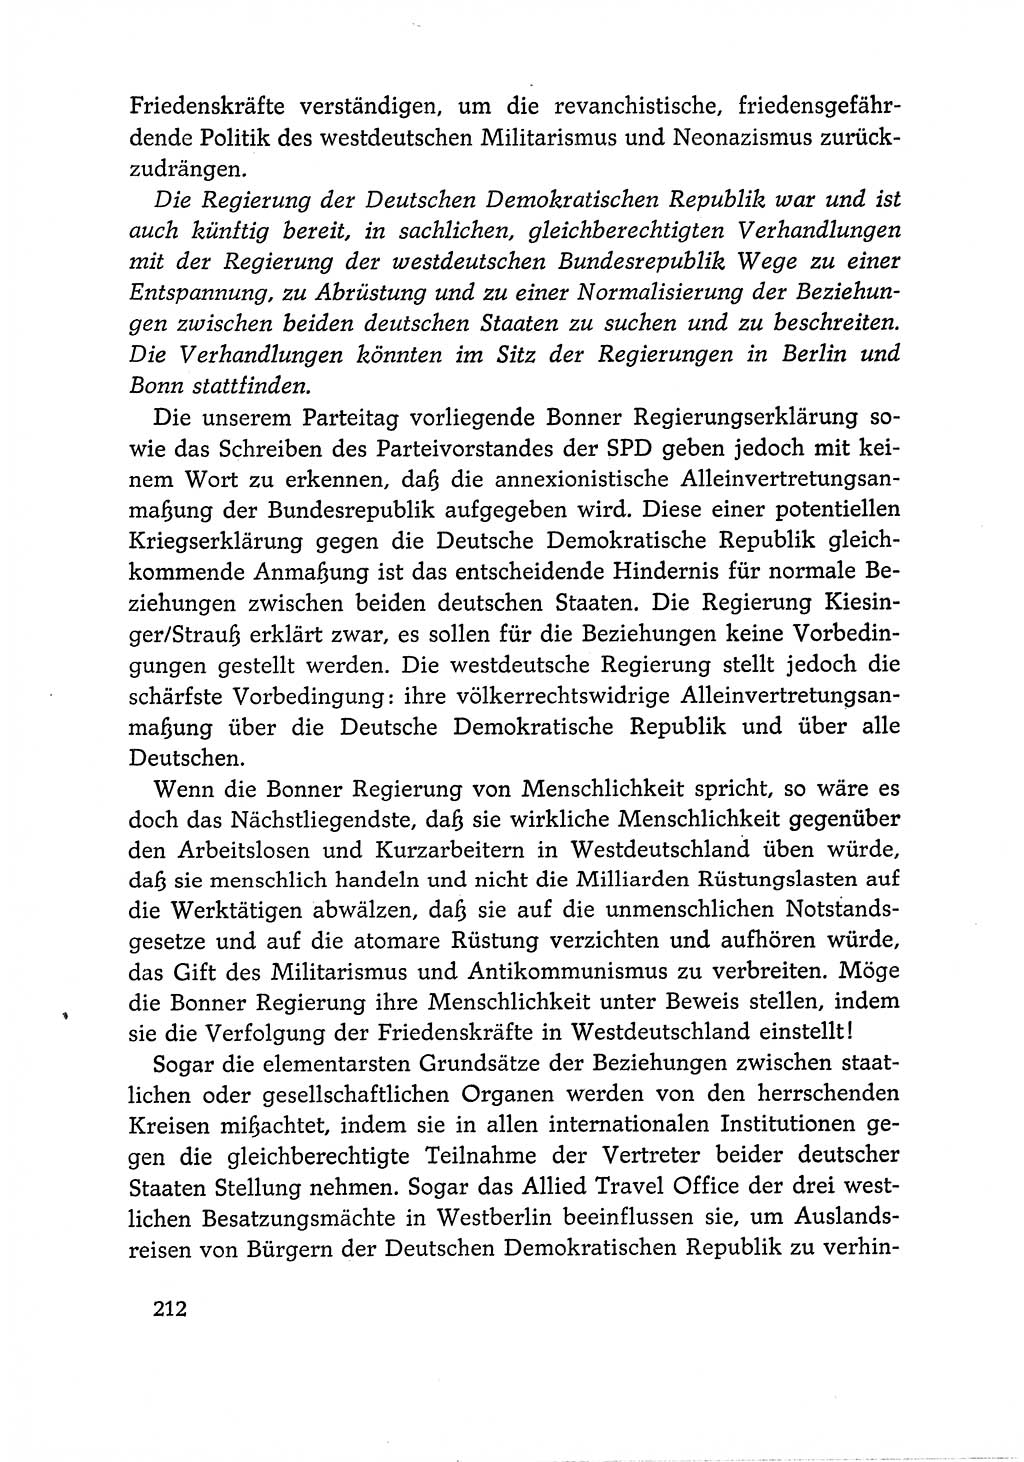 Dokumente der Sozialistischen Einheitspartei Deutschlands (SED) [Deutsche Demokratische Republik (DDR)] 1966-1967, Seite 212 (Dok. SED DDR 1966-1967, S. 212)